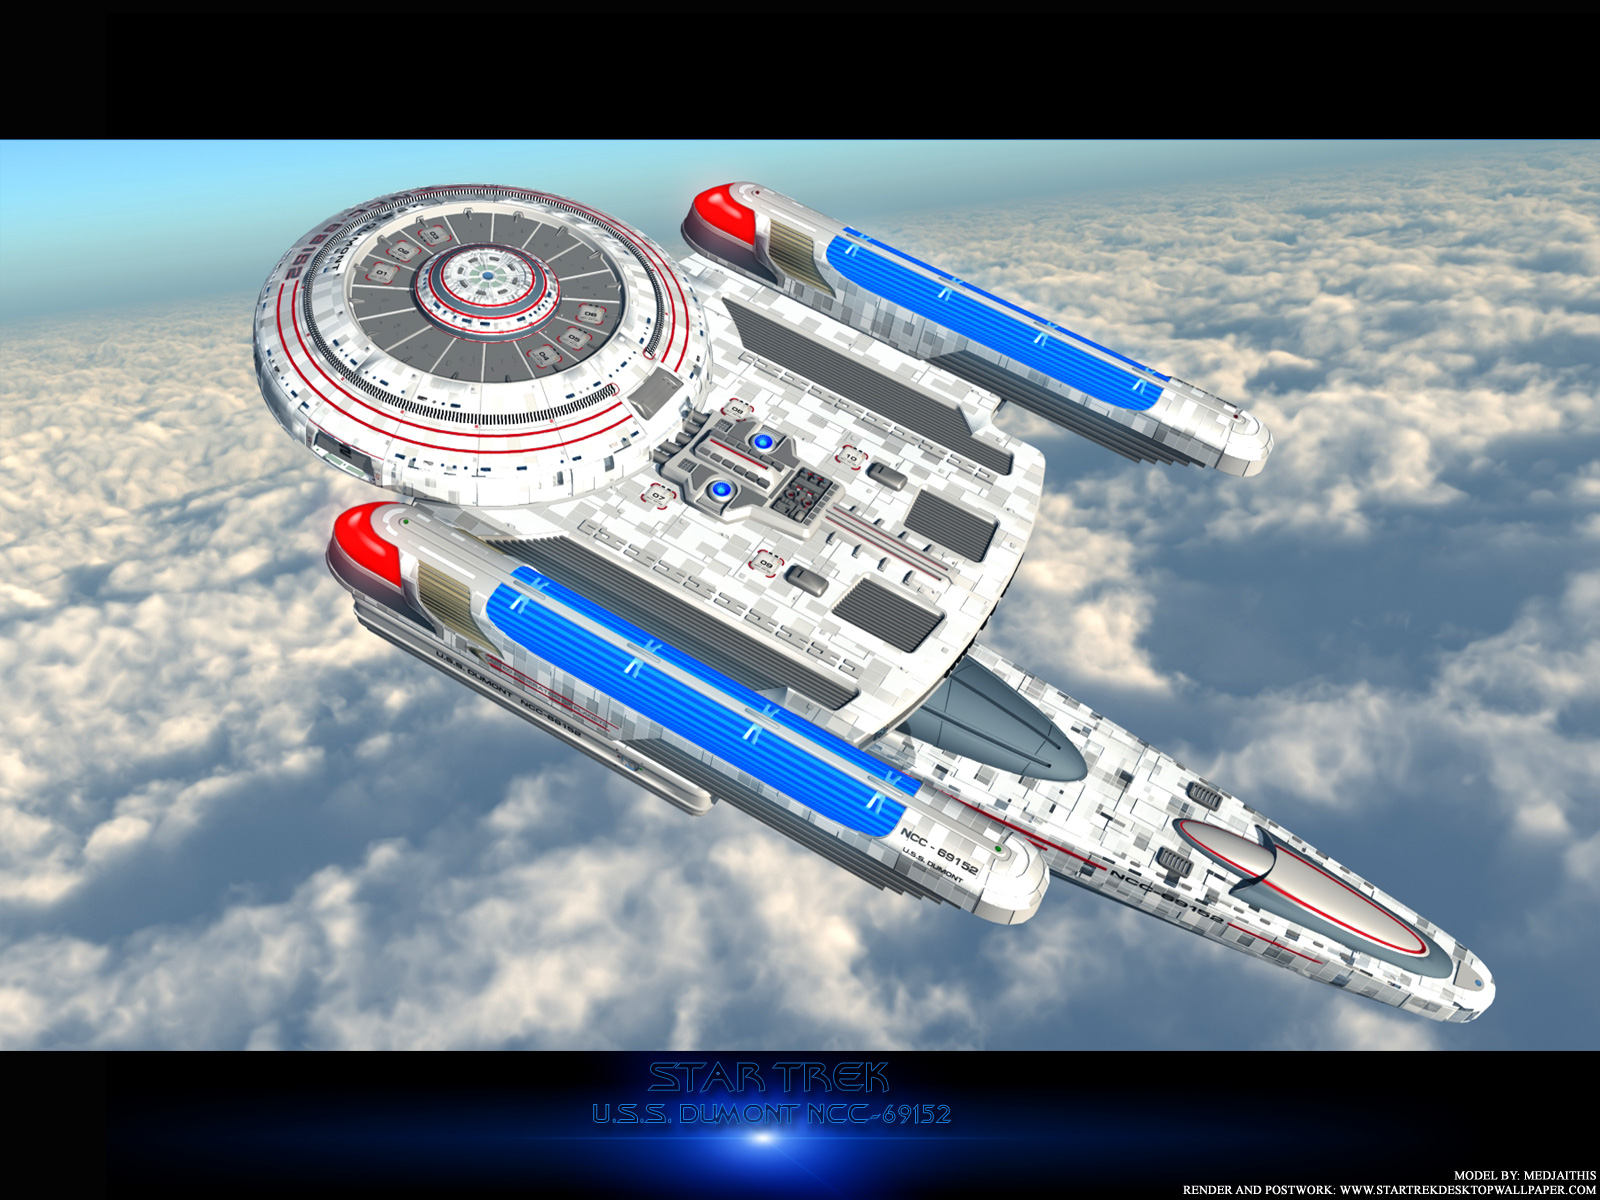 - Star Trek USS Dumont NGC69152 Over Clouds - free Star Trek computer desktop wallpaper, pictures, images.